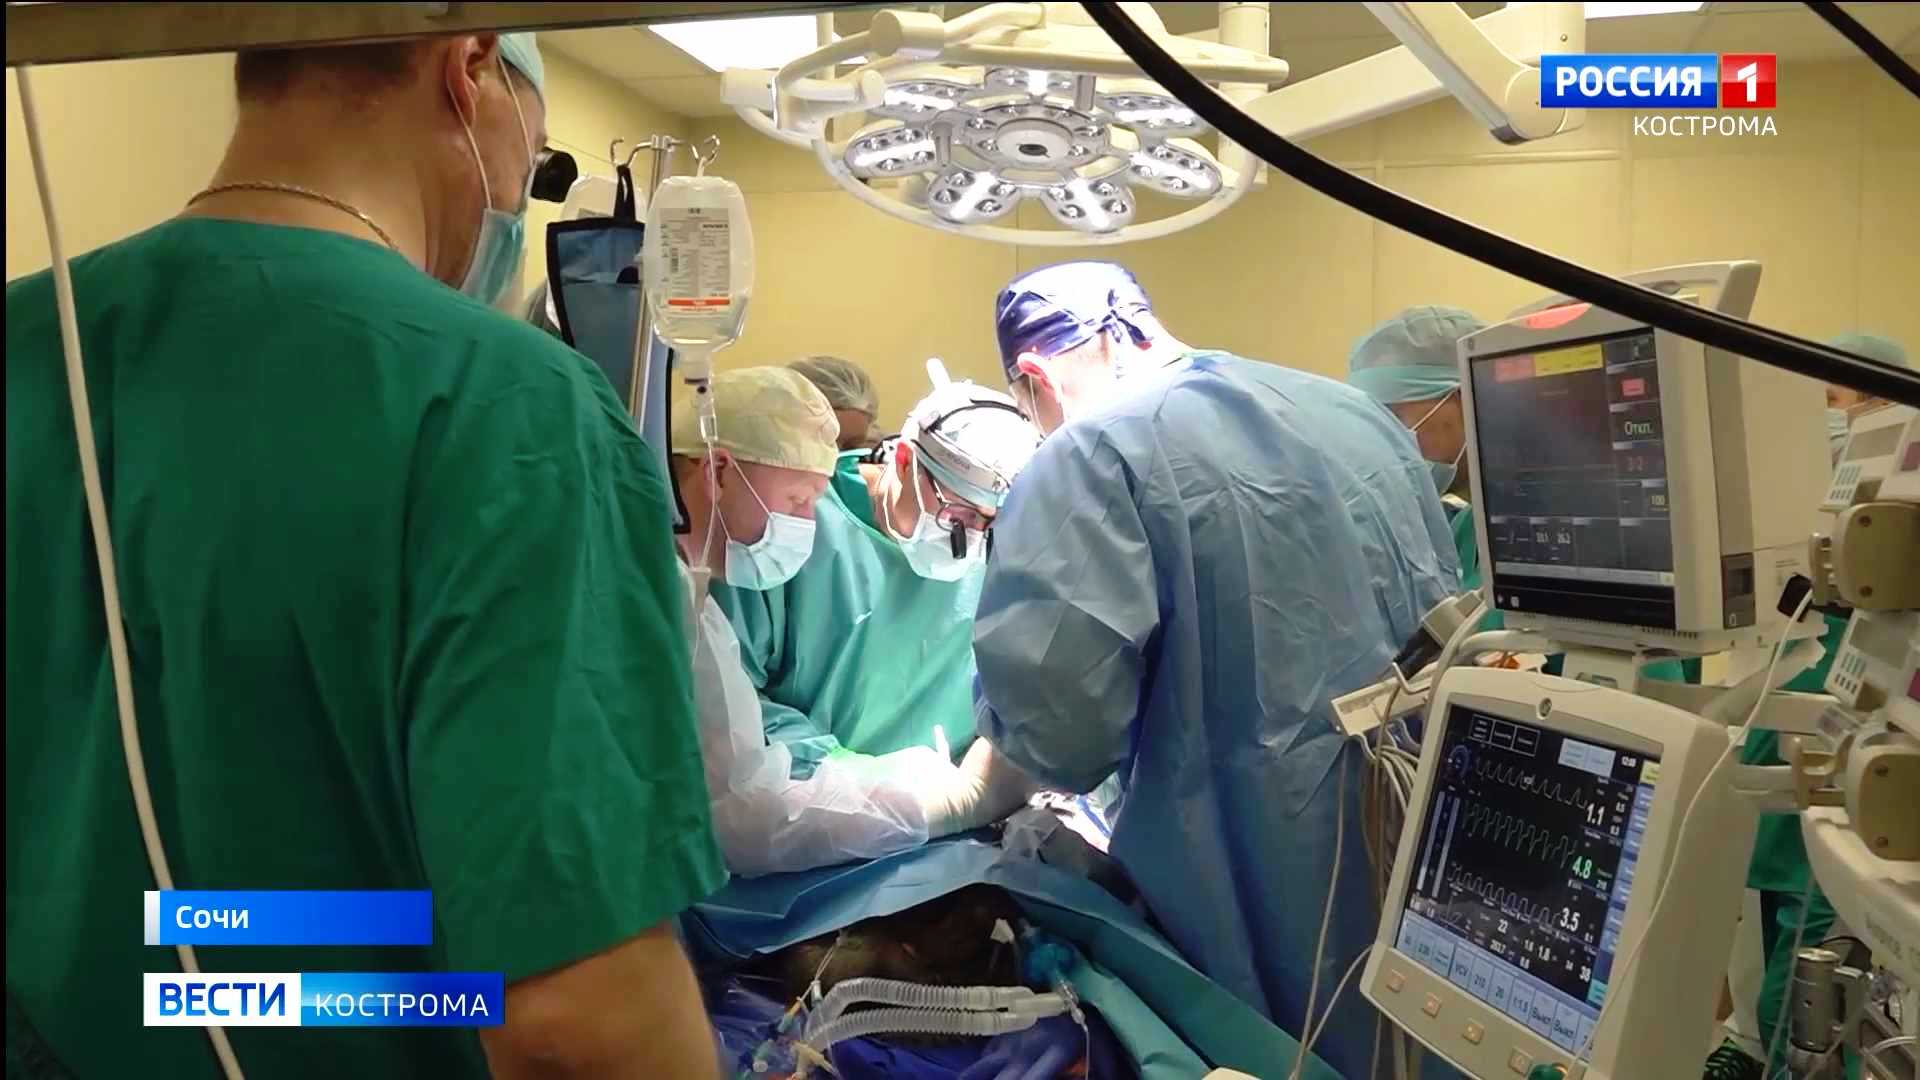 Костромские онкологи рассказали об уникальной операции на мозге обезьяны